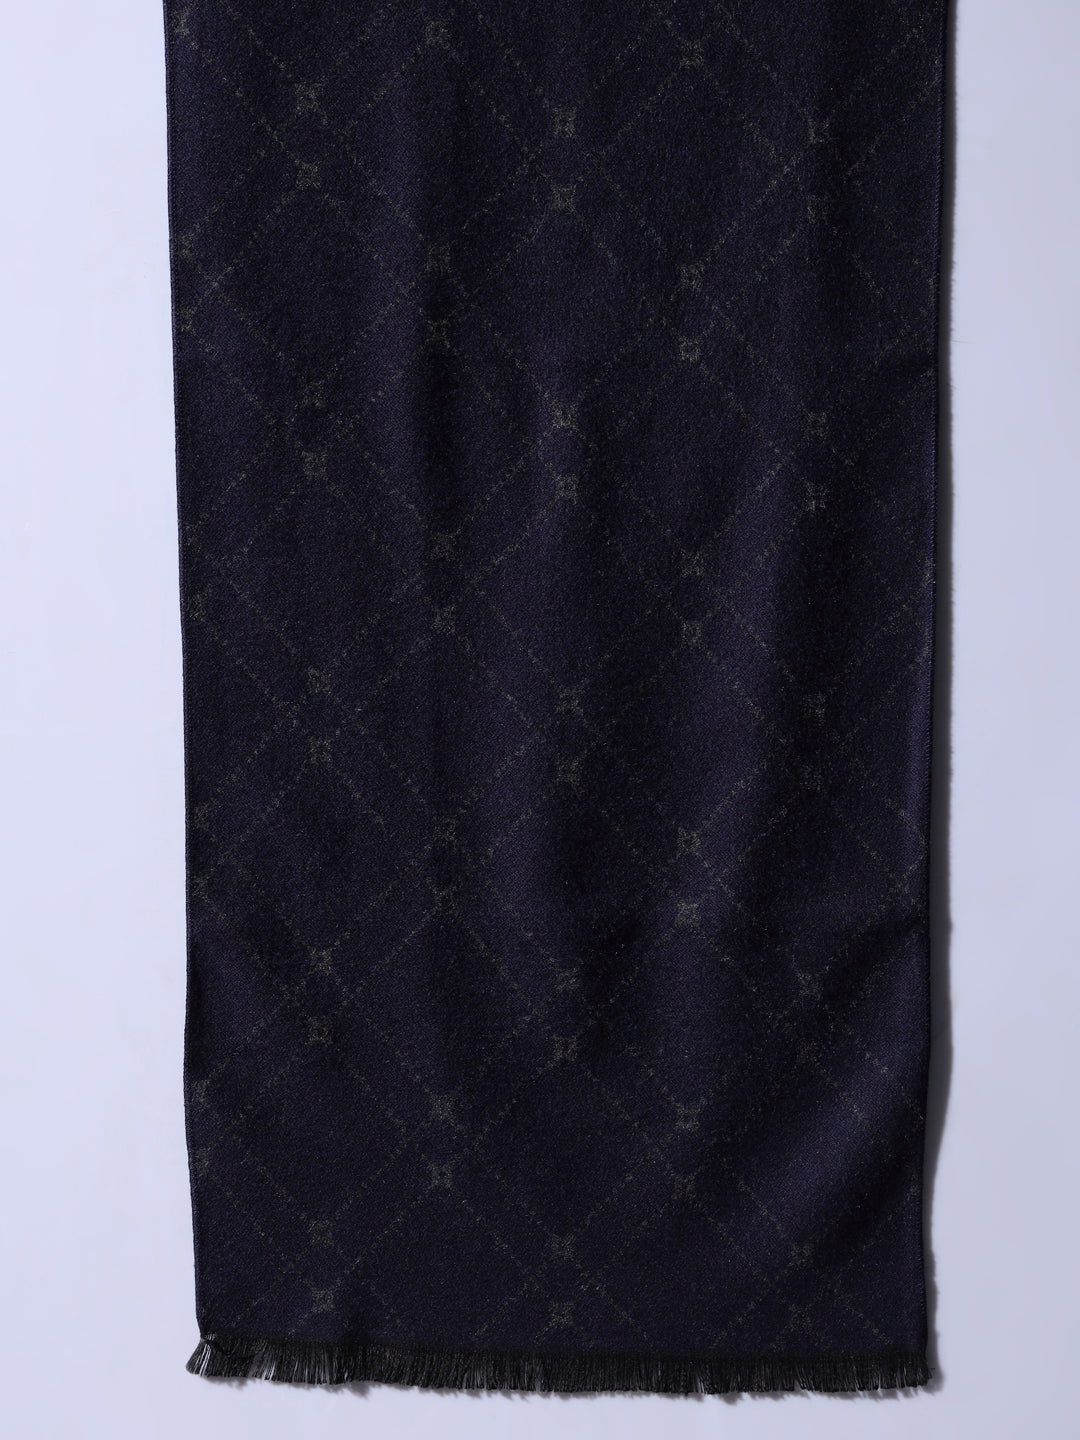 woolen muffler, muffler scarf male